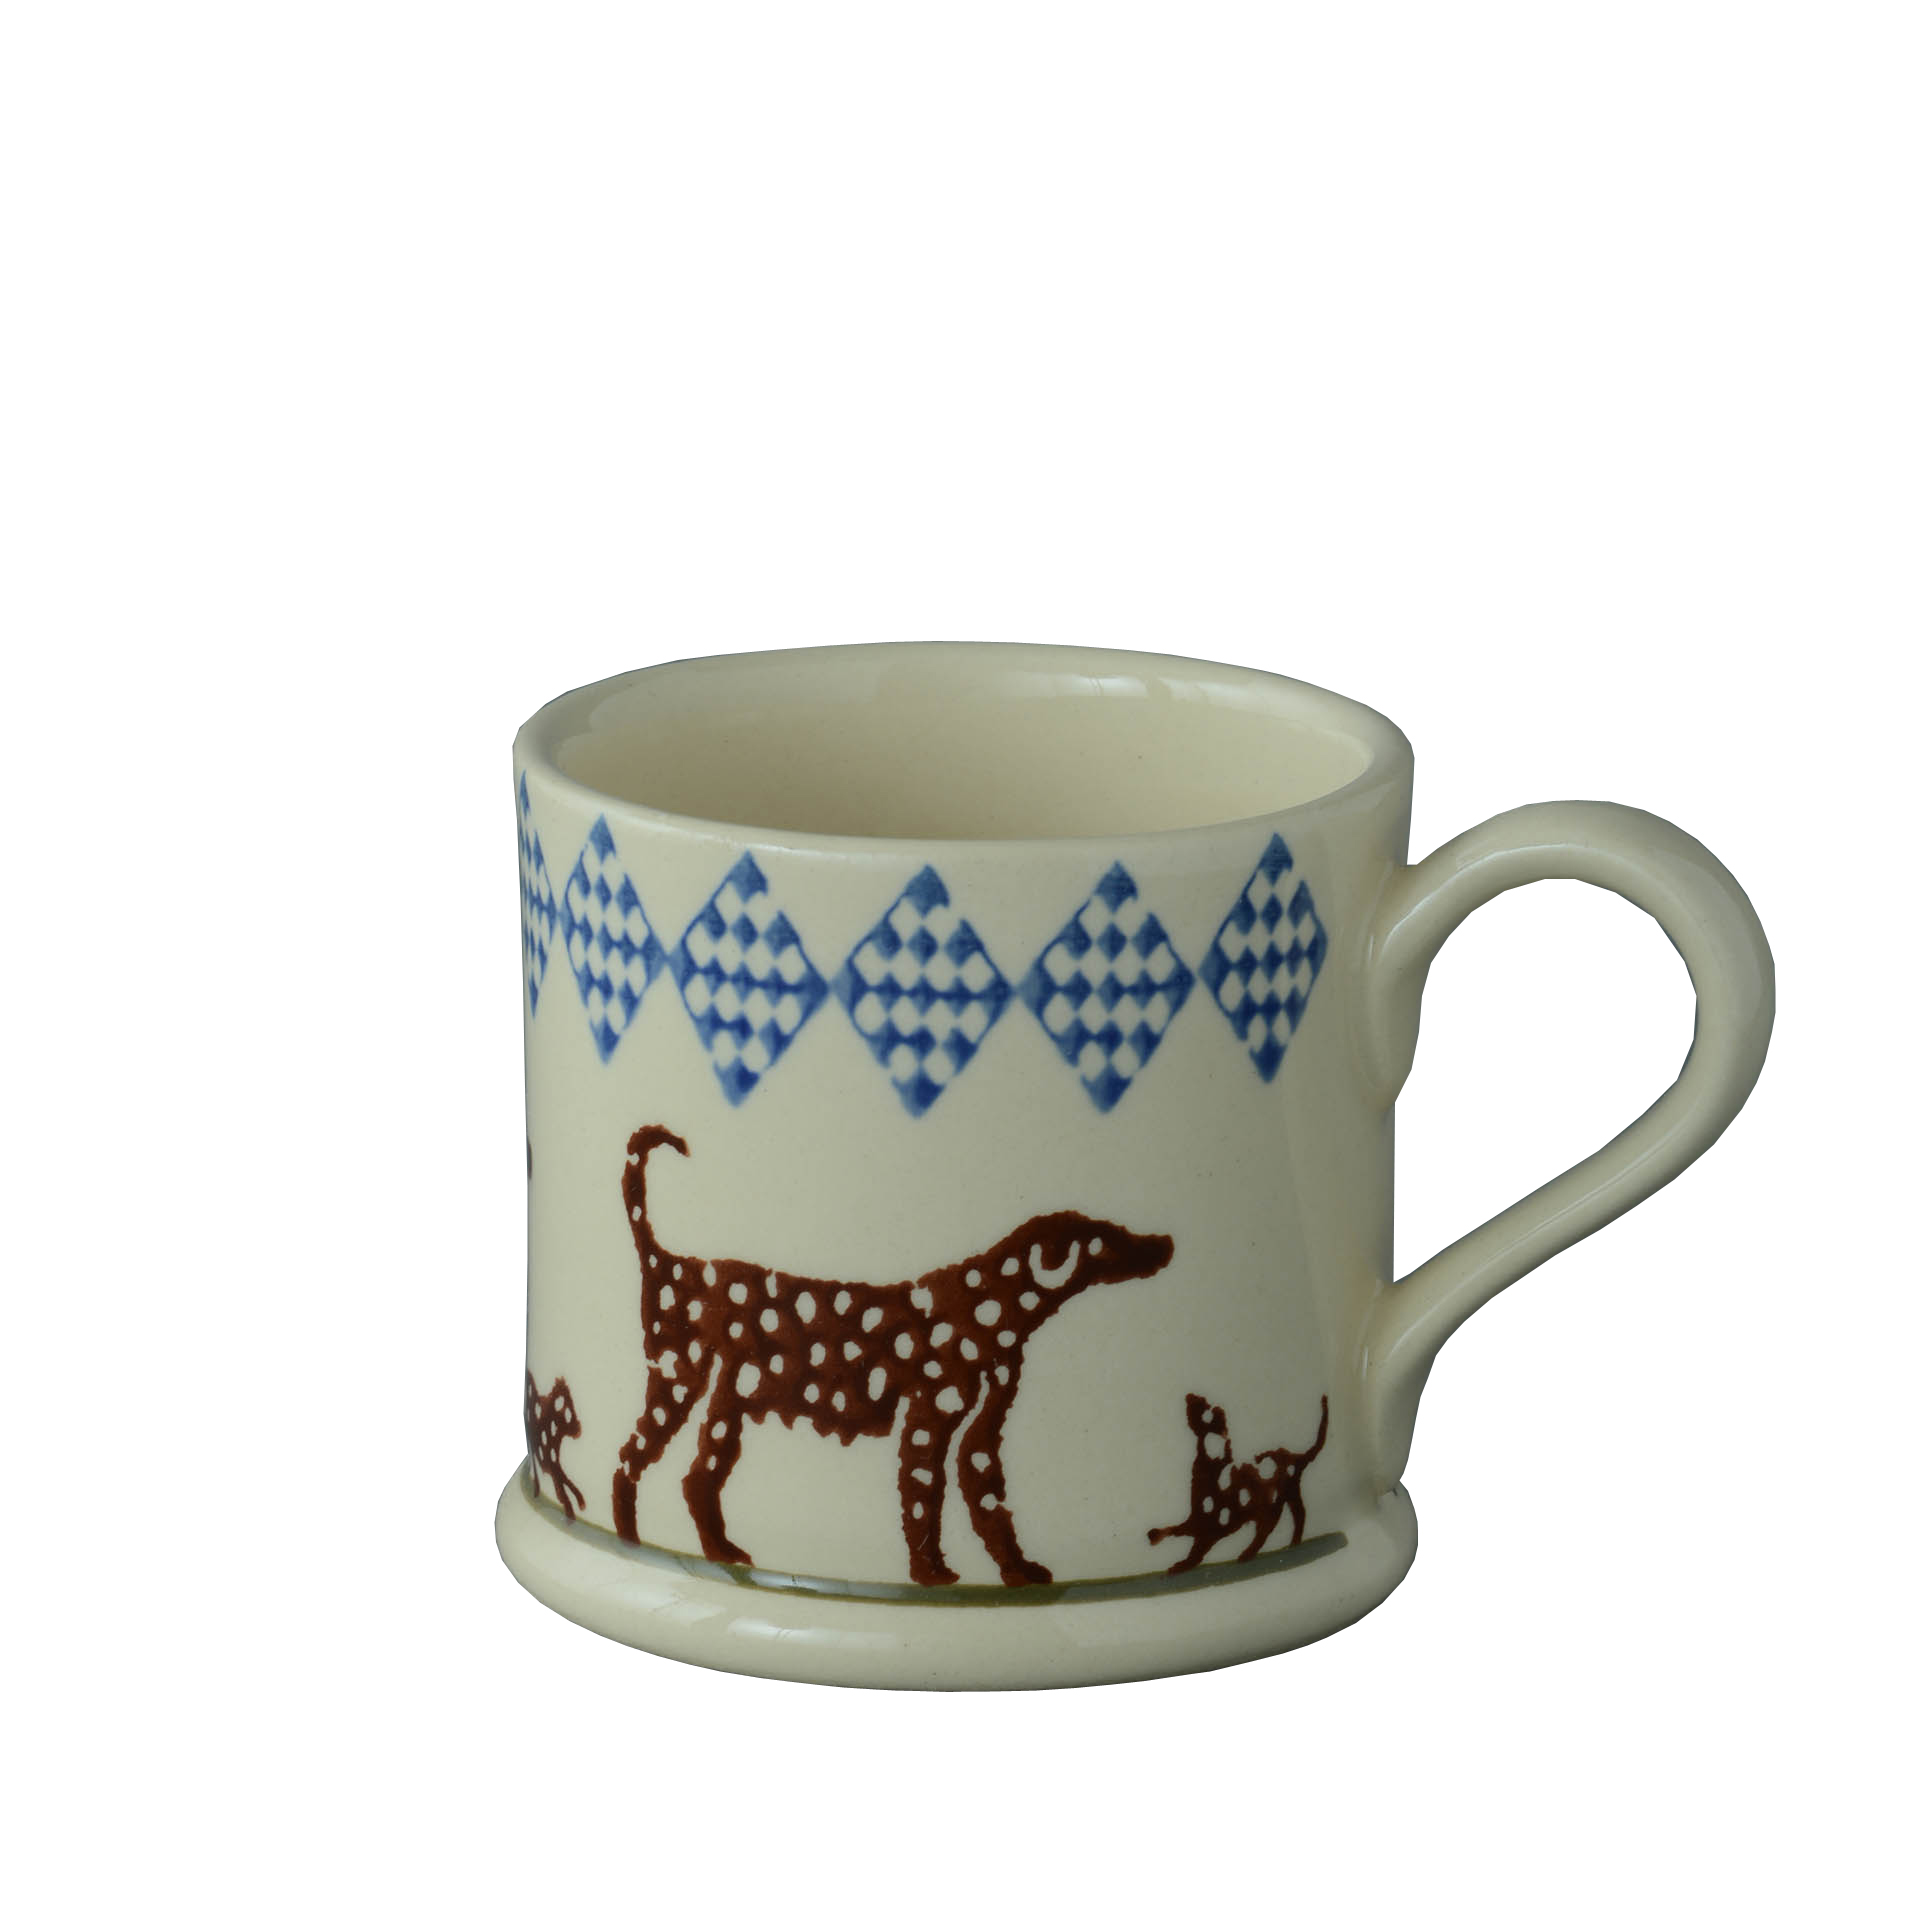 Brixton Spotty Dog Mug Small 150ml Gift